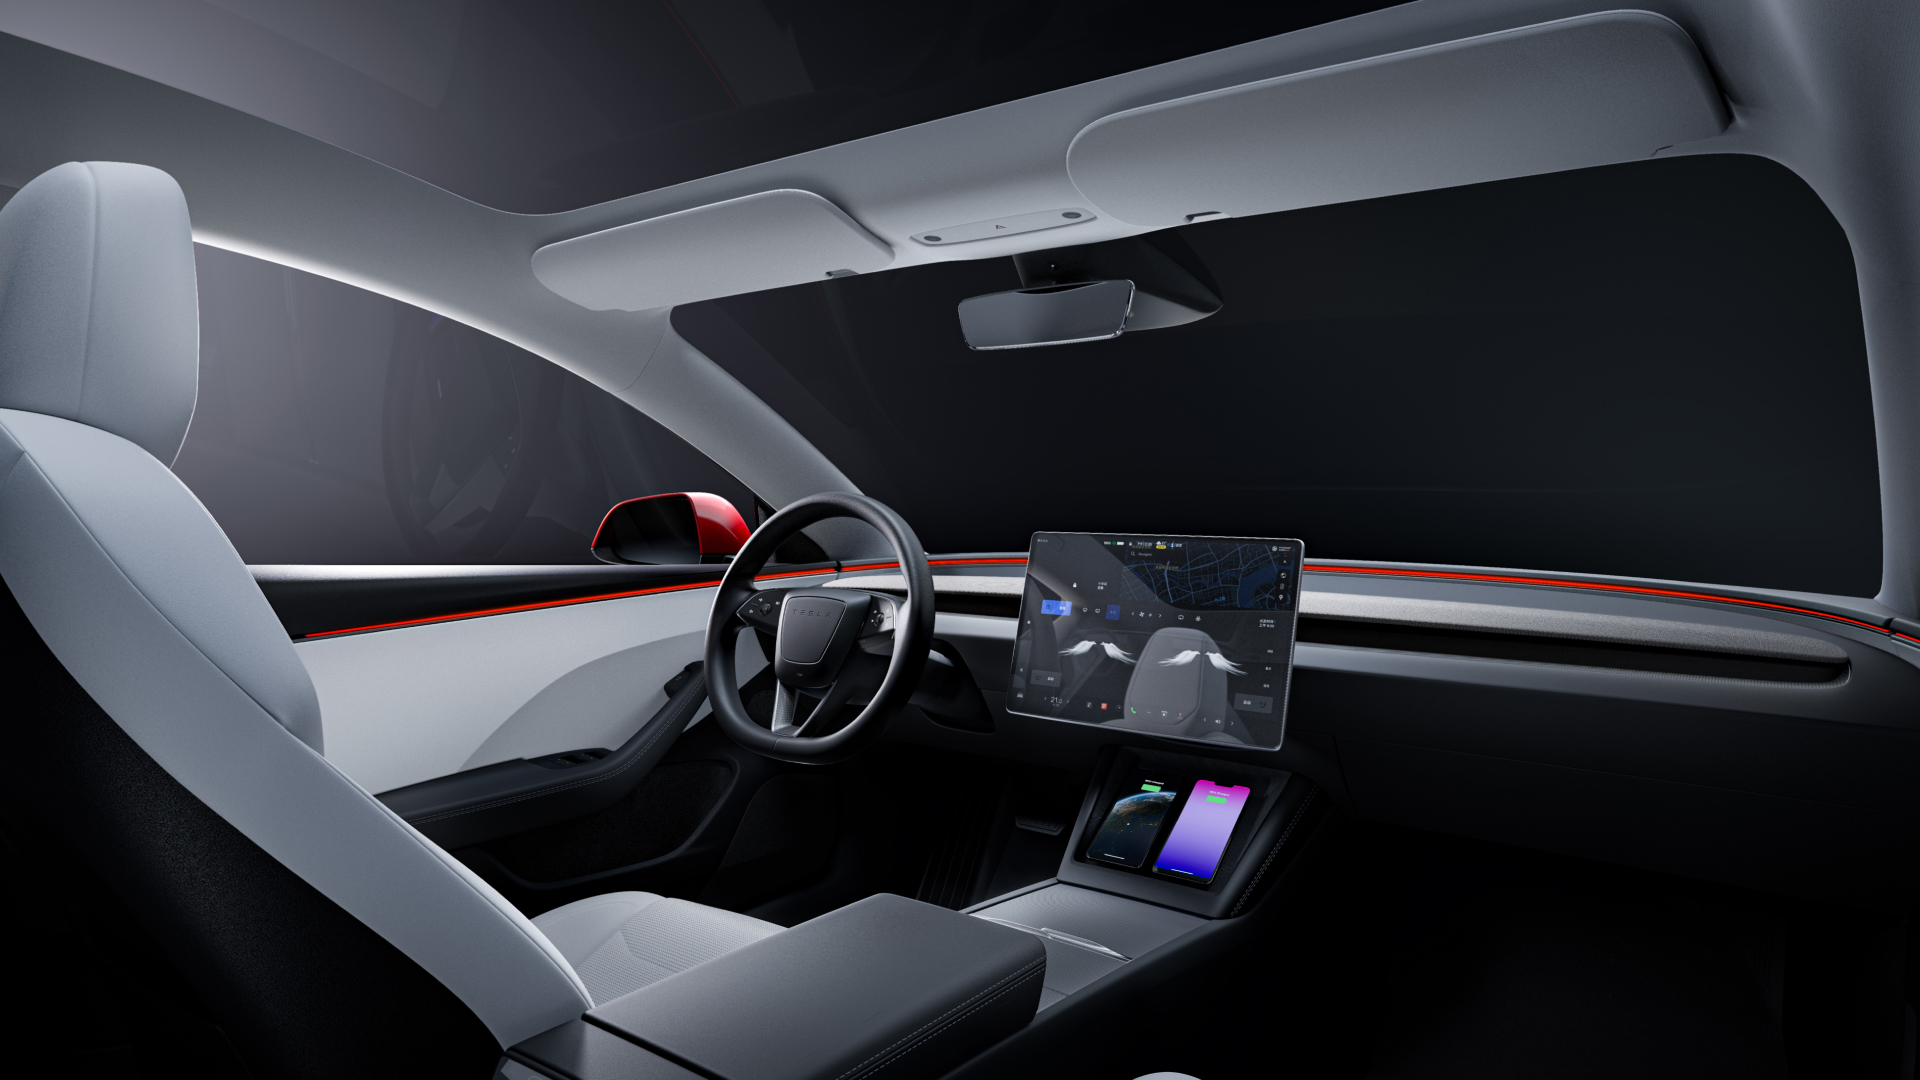 Nouveau! Tapis de voiture pour votre Tesla Model 3